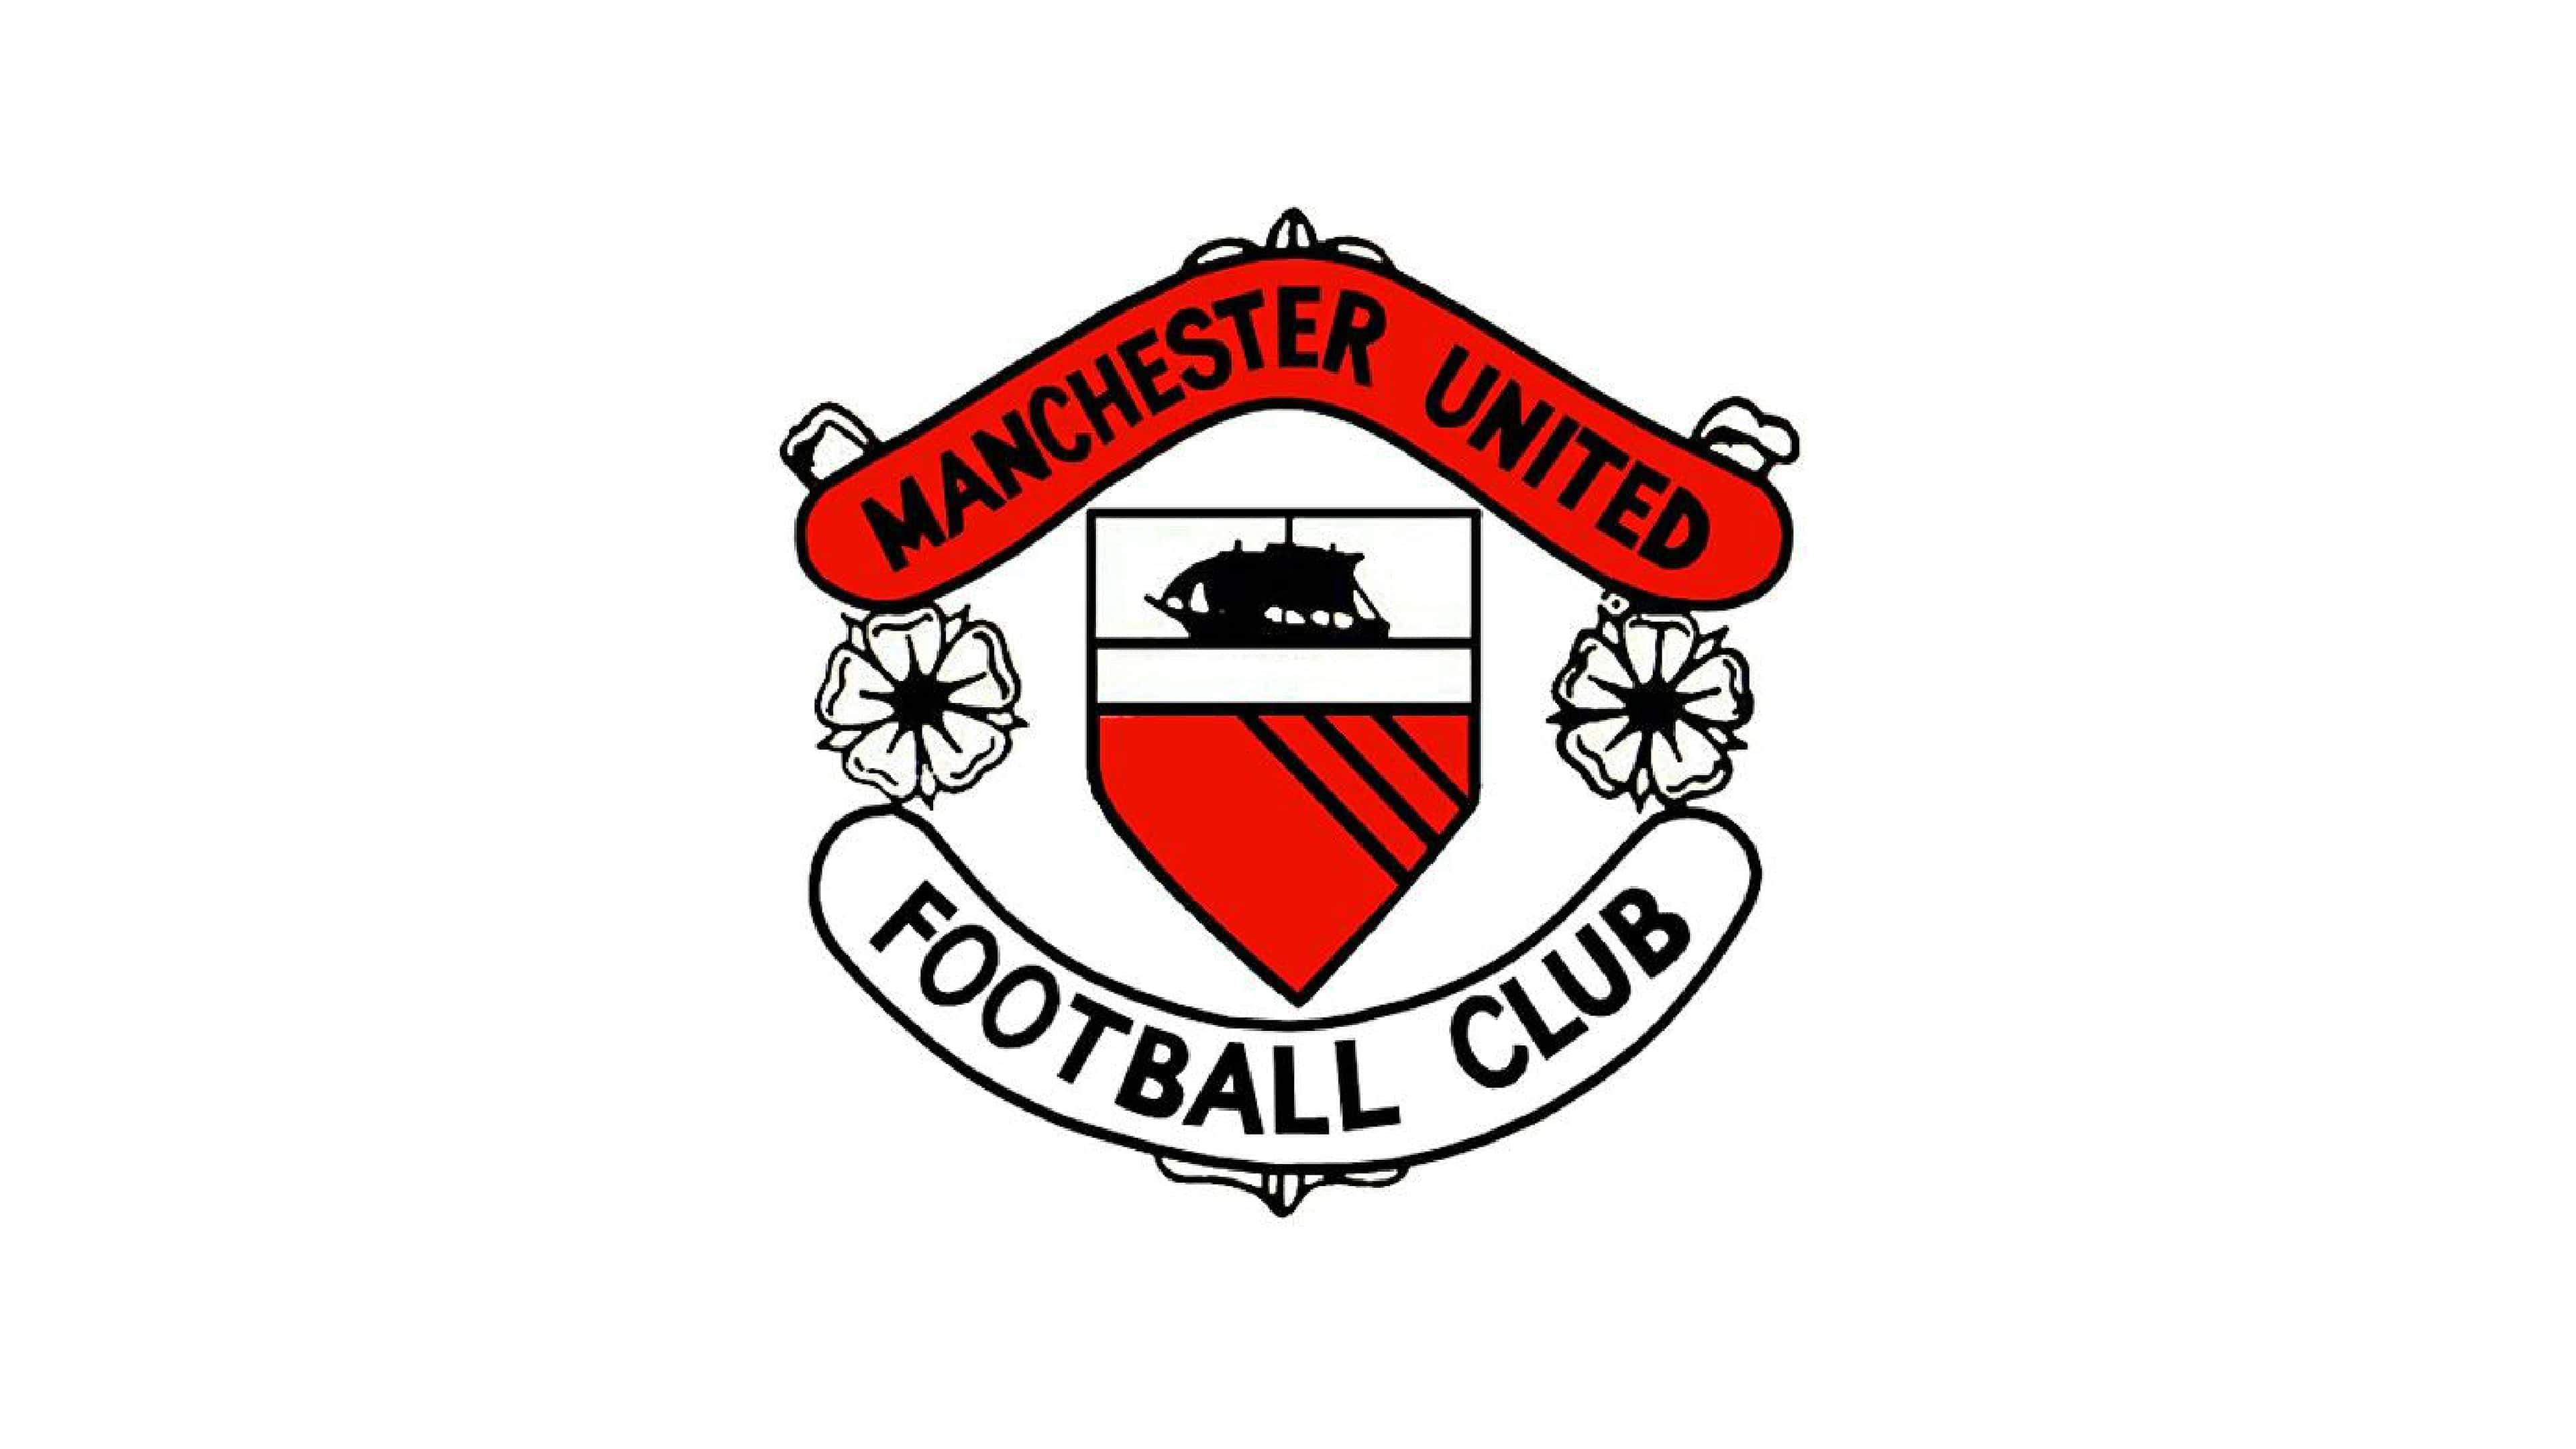 Old Manchester United Logos - Myra Washington